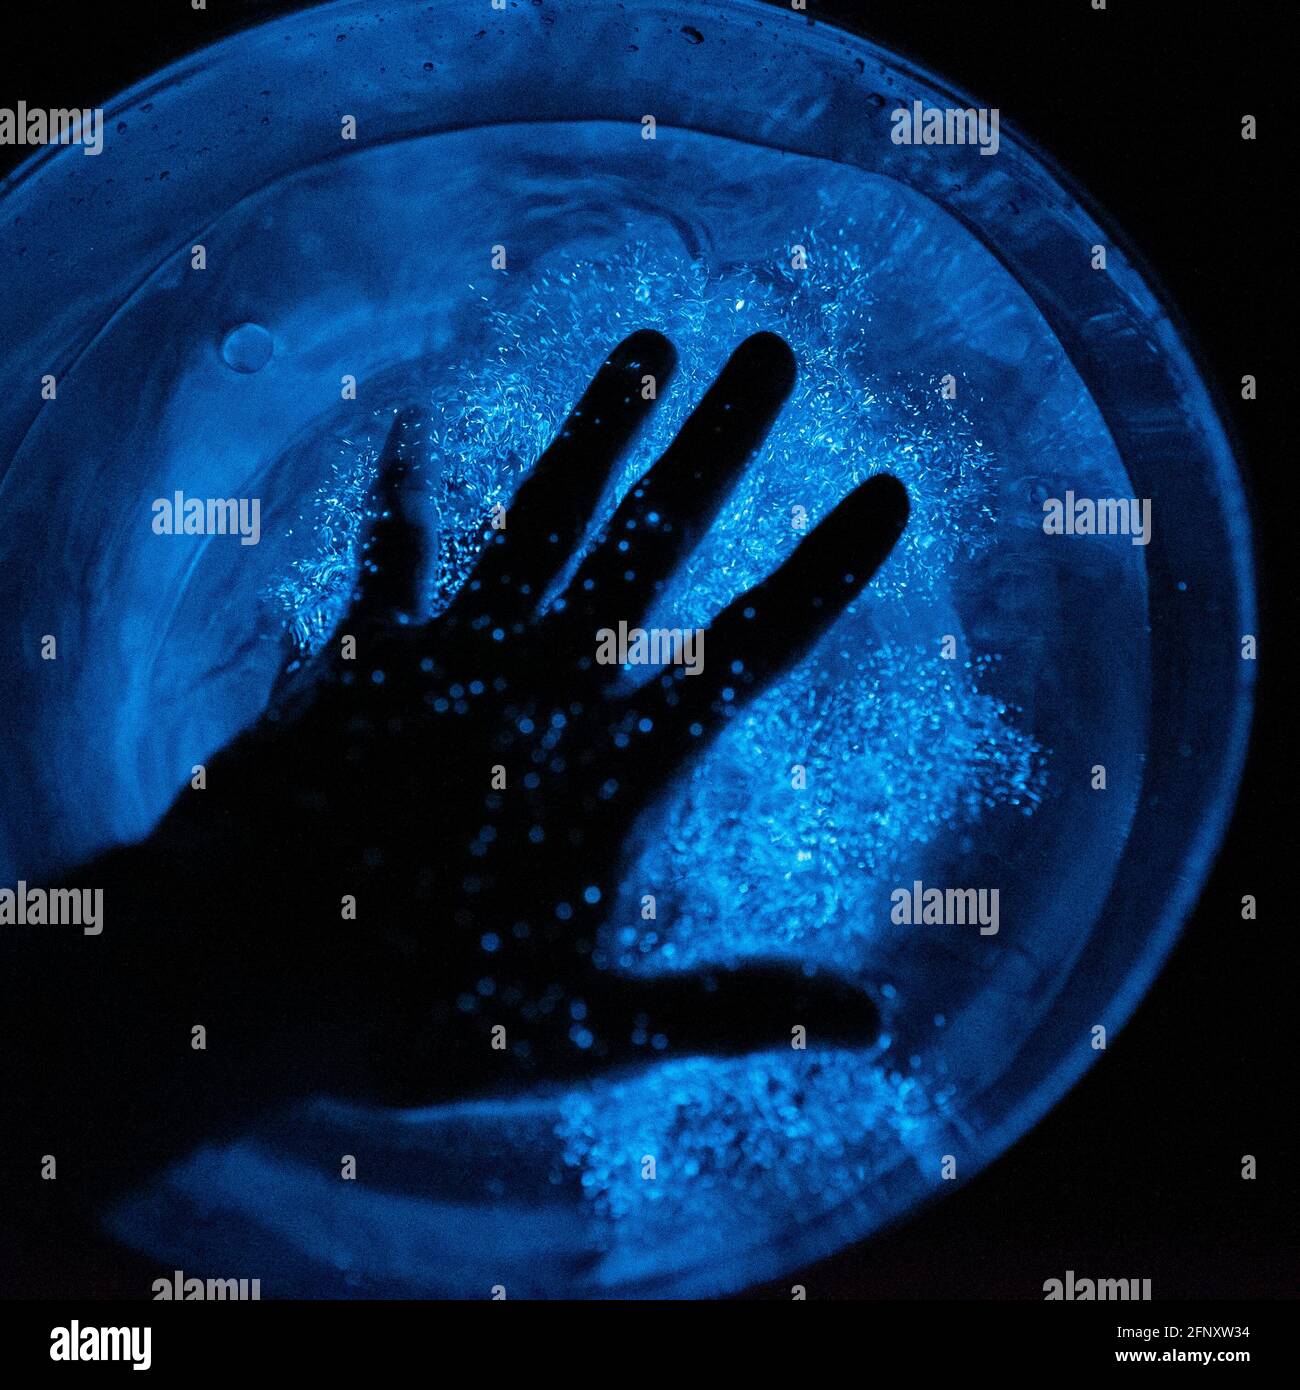 Mano in bioluminescenza. Fotografia notturna di una mano immersa in una ciotola di plancton bioluminescente. Foto Stock